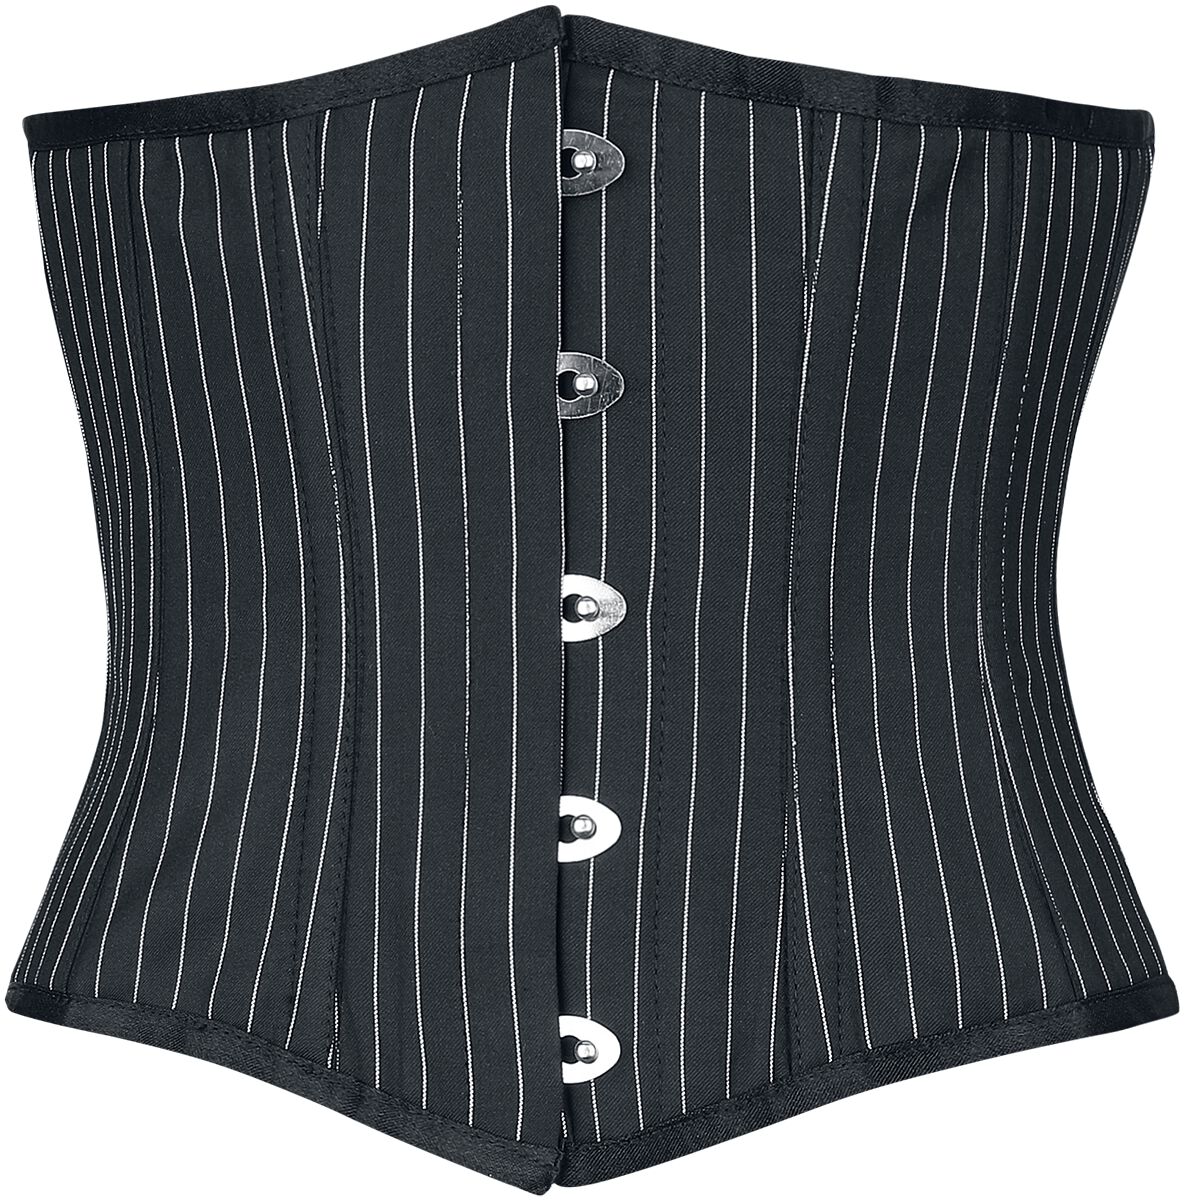 Striped corset